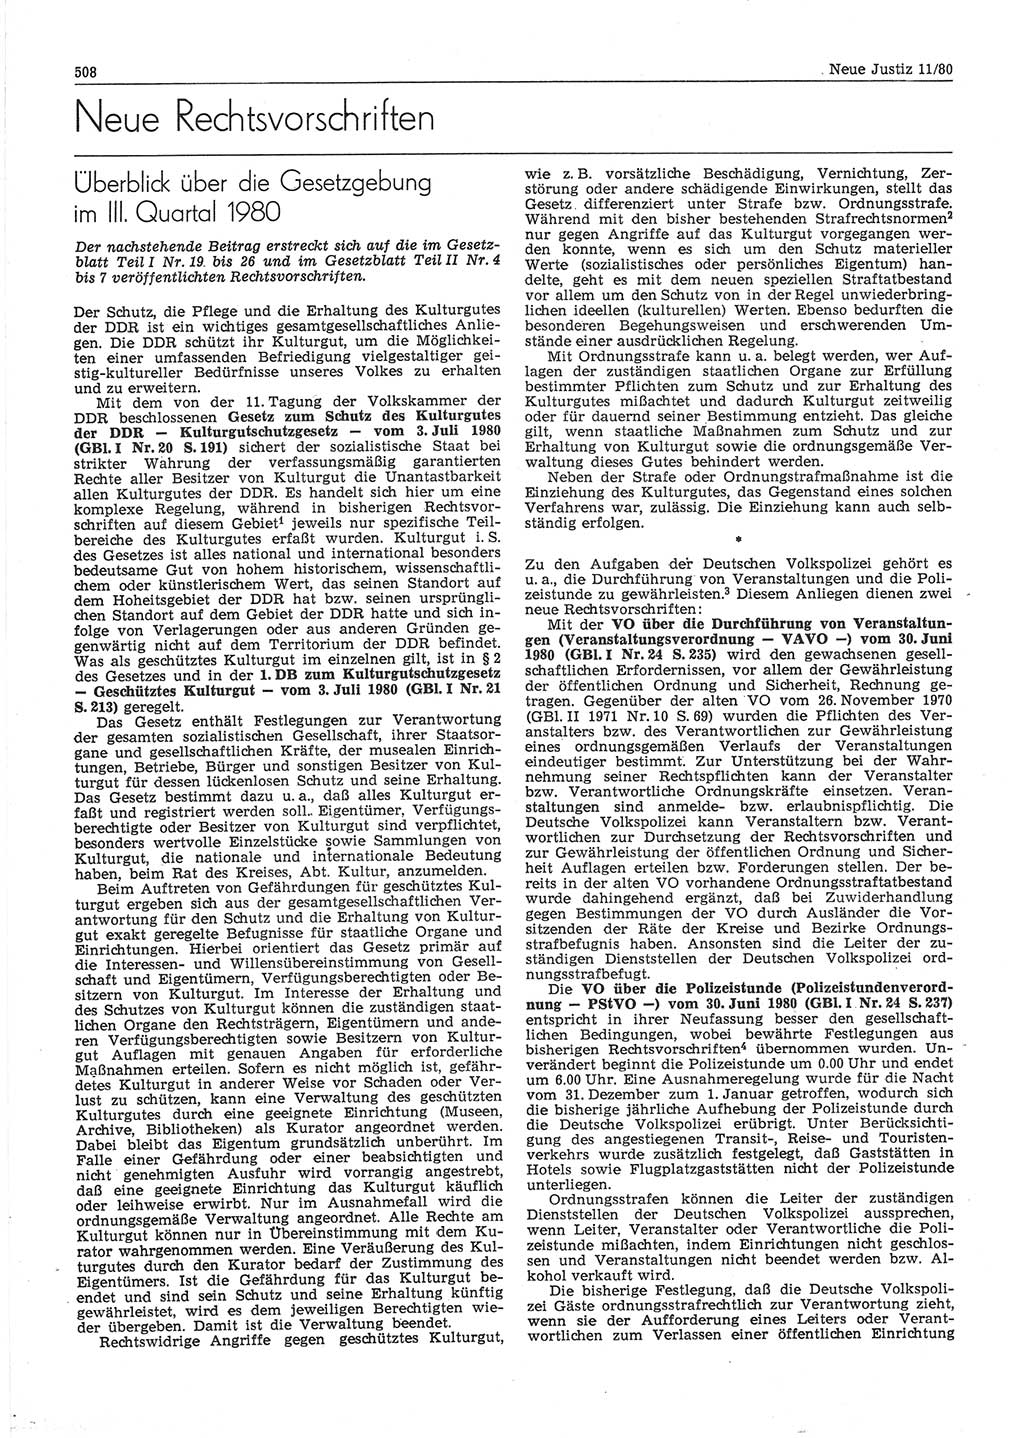 Neue Justiz (NJ), Zeitschrift für sozialistisches Recht und Gesetzlichkeit [Deutsche Demokratische Republik (DDR)], 34. Jahrgang 1980, Seite 508 (NJ DDR 1980, S. 508)